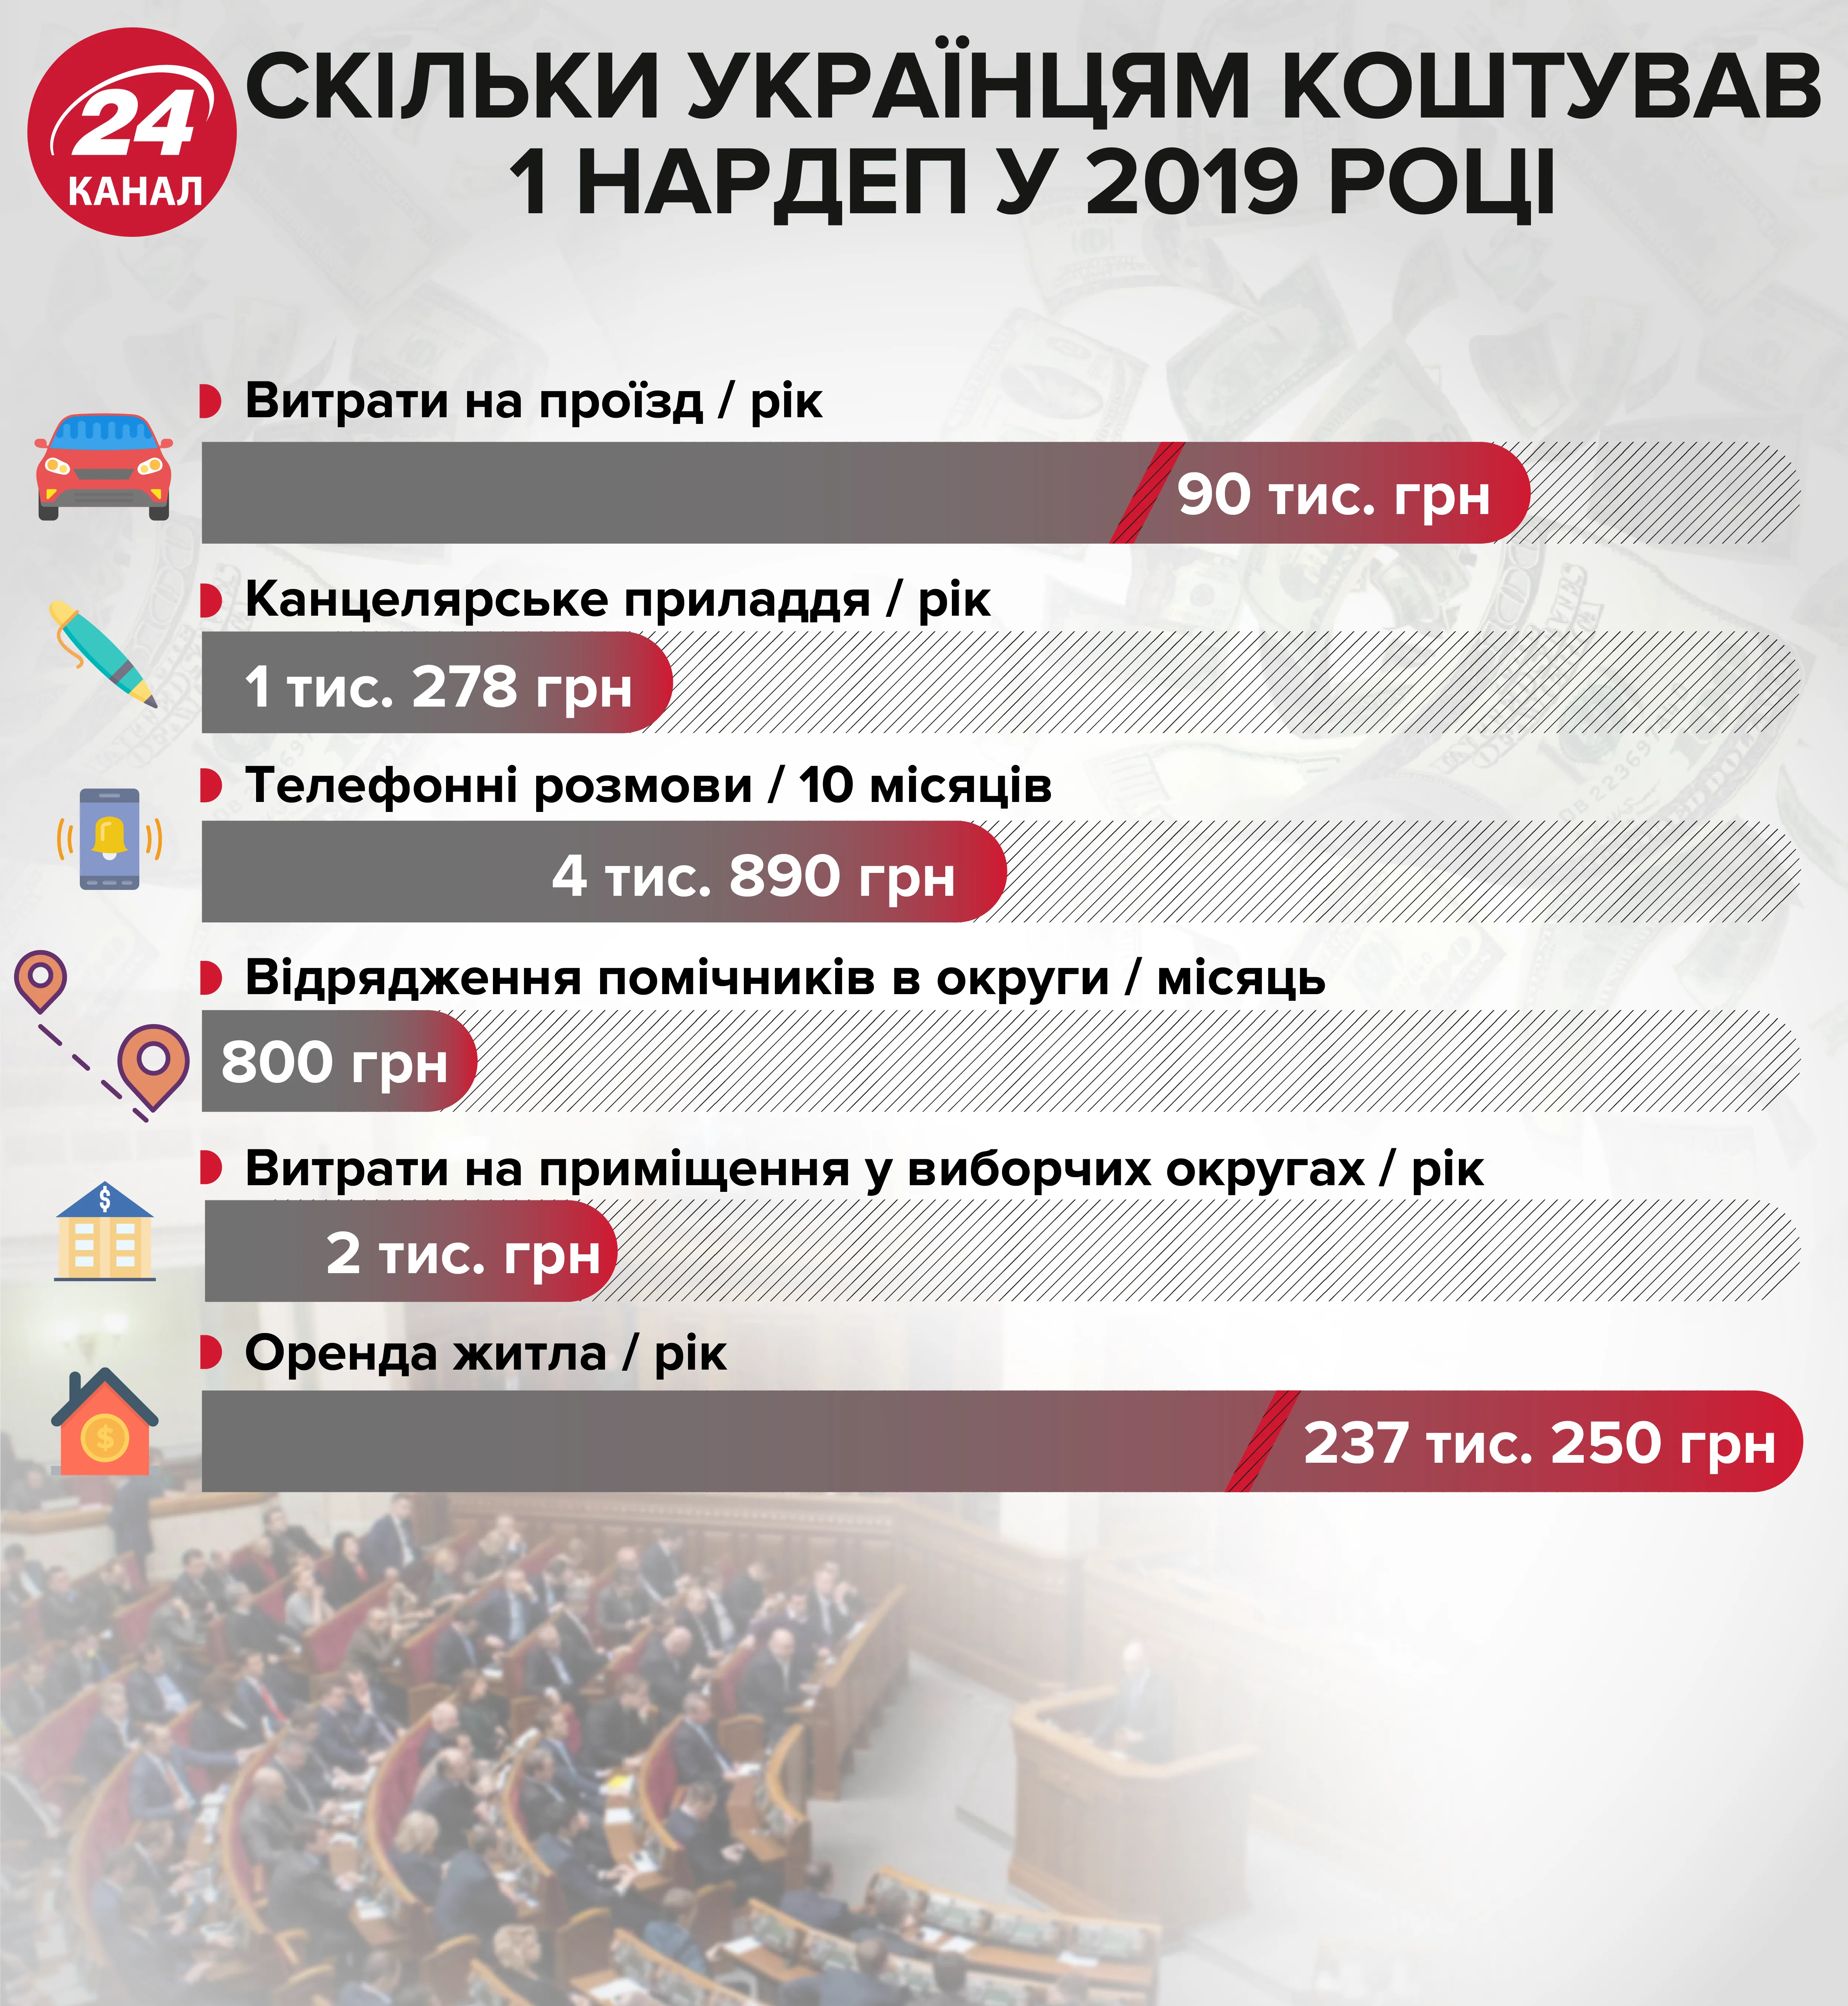 скільки українцям коштував 1 нардеп інфографіка 24 канал